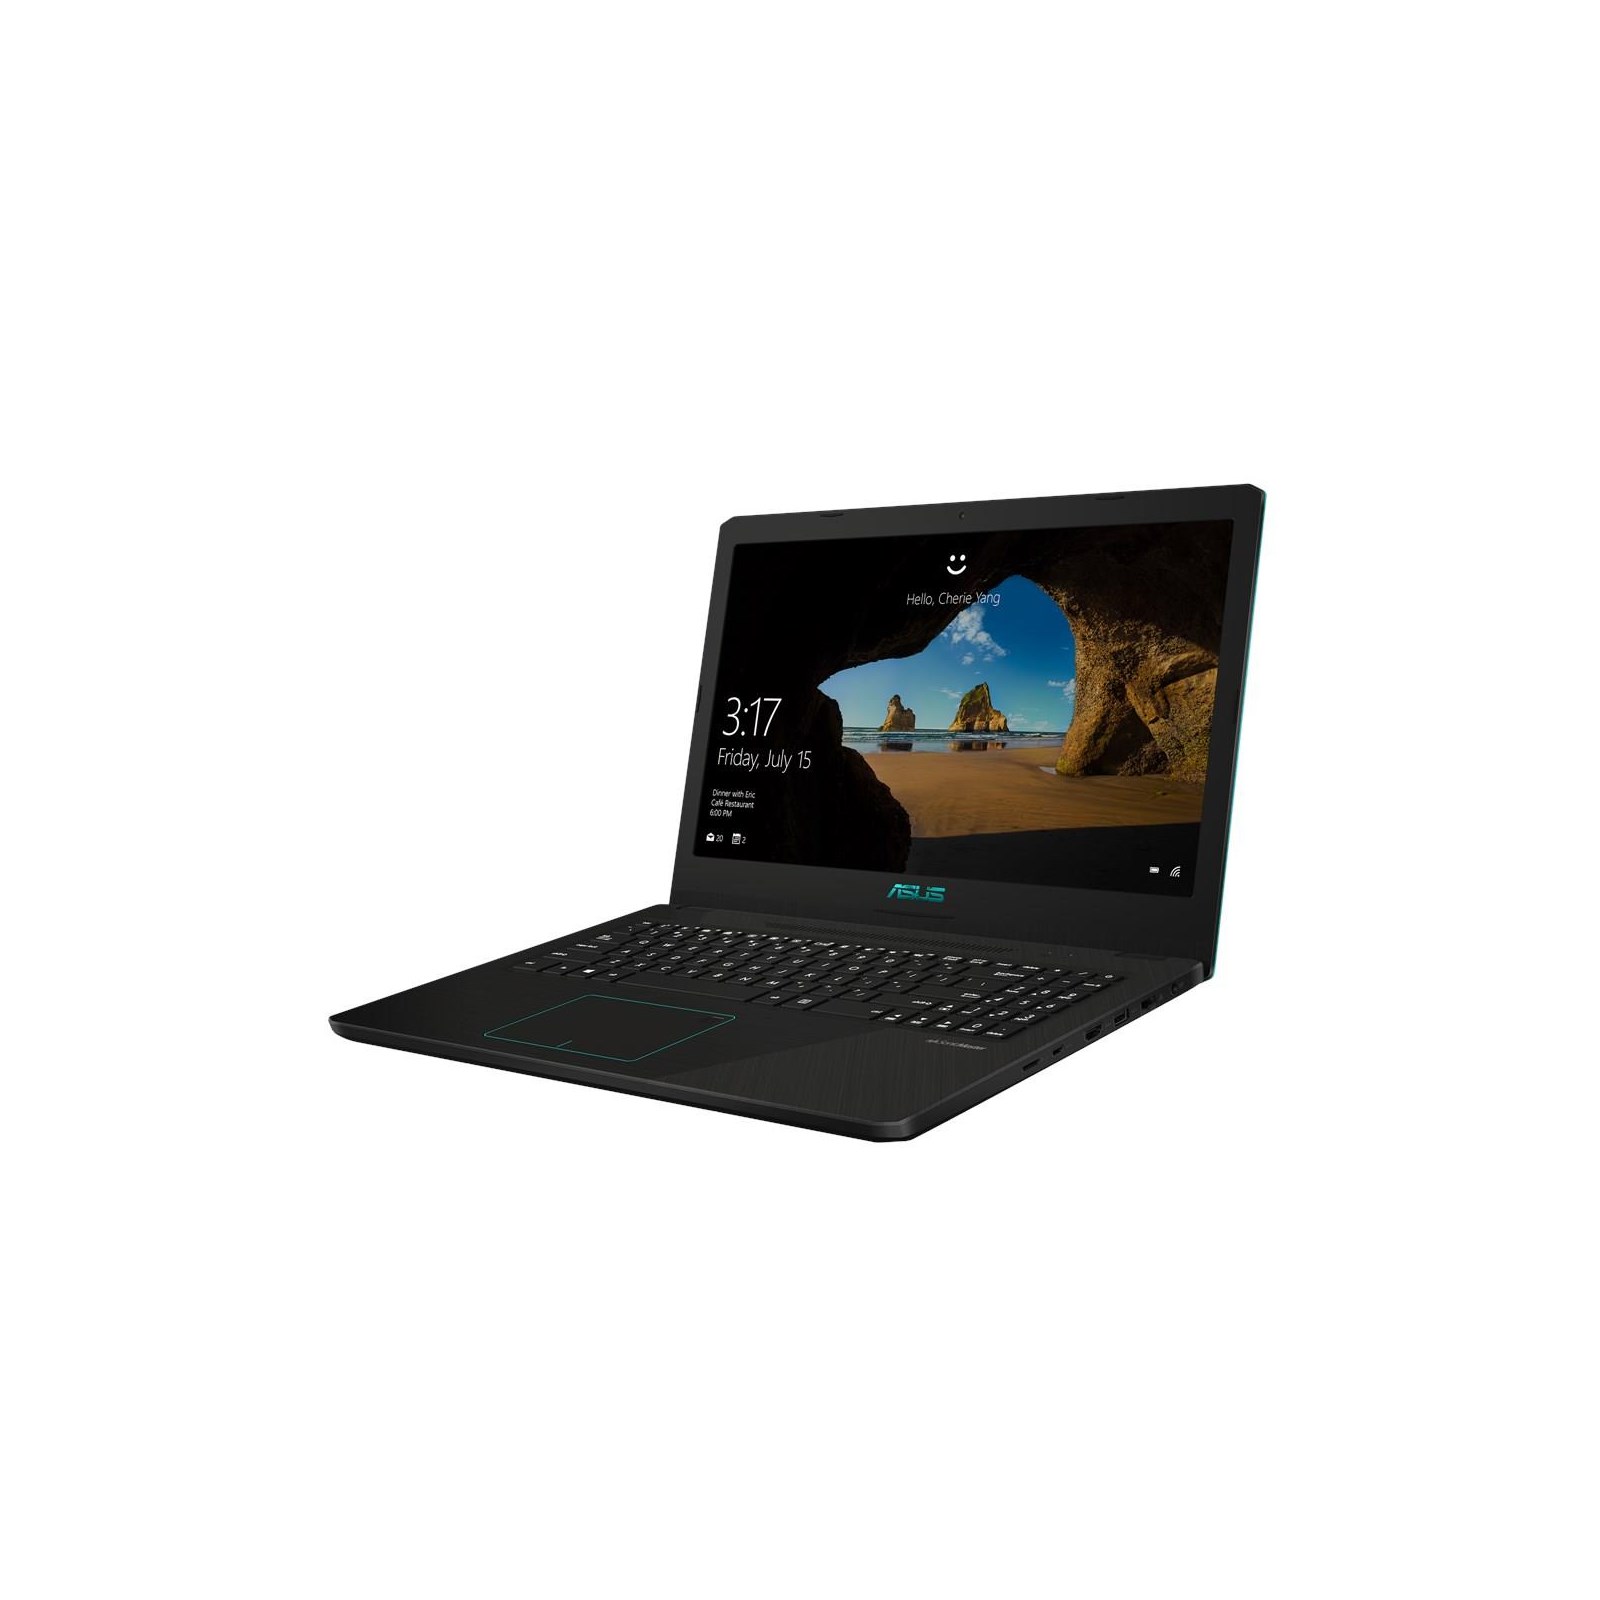 Asus Vivobook K570ud 156 8gb Core I5 Laptop K570ud Dm276t Ccl